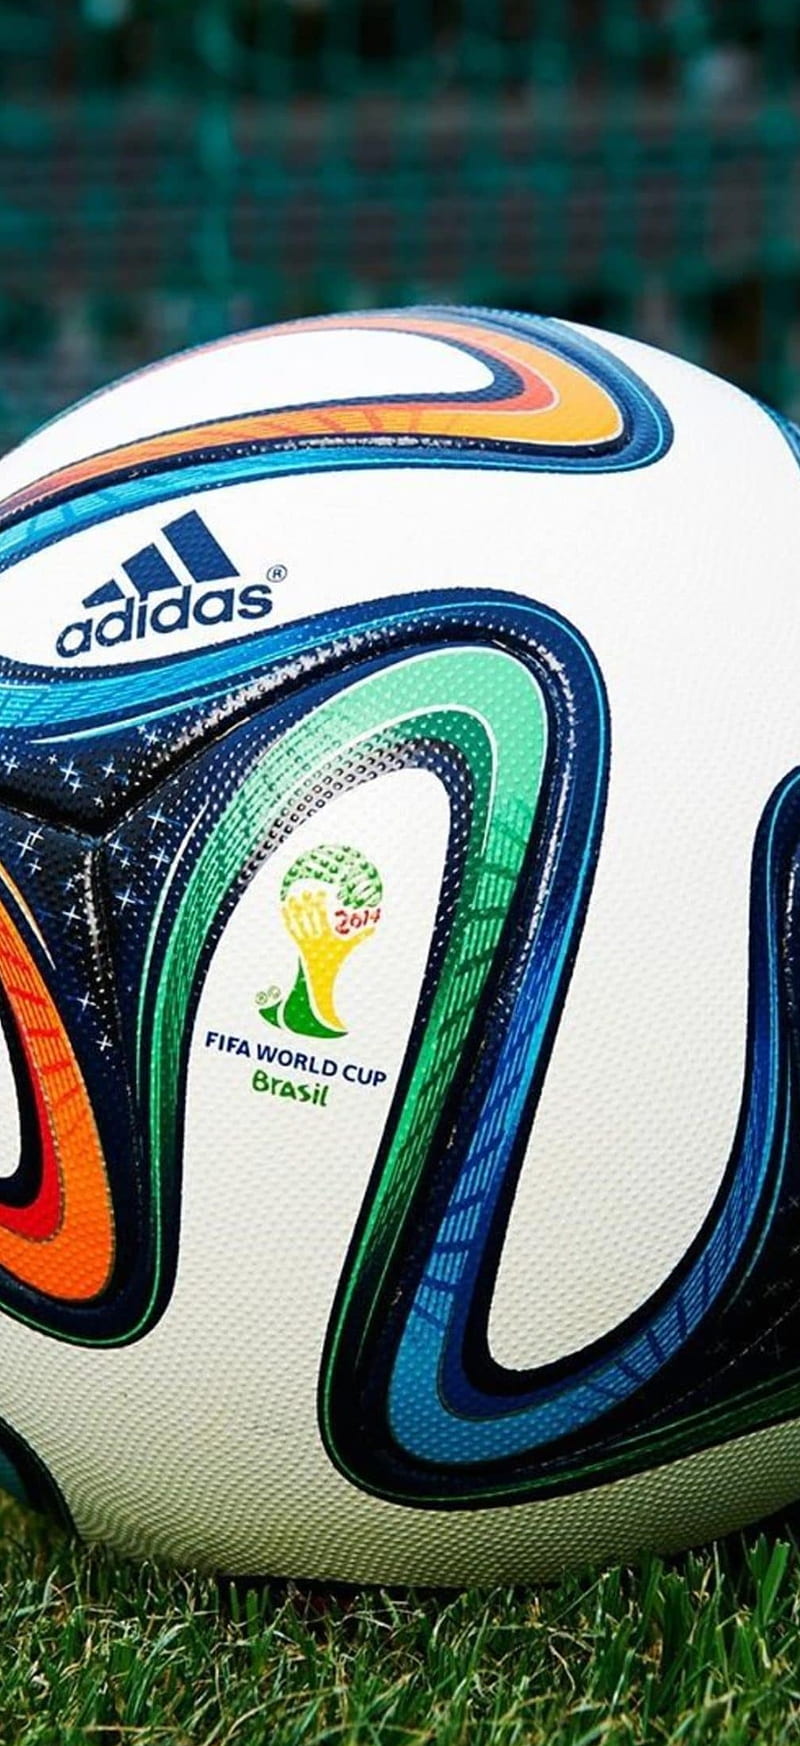 https://w0.peakpx.com/wallpaper/165/554/HD-wallpaper-fifa-world-cup-2014-adidas-ball-football-futbol-world-cup-world-cup-ball.jpg